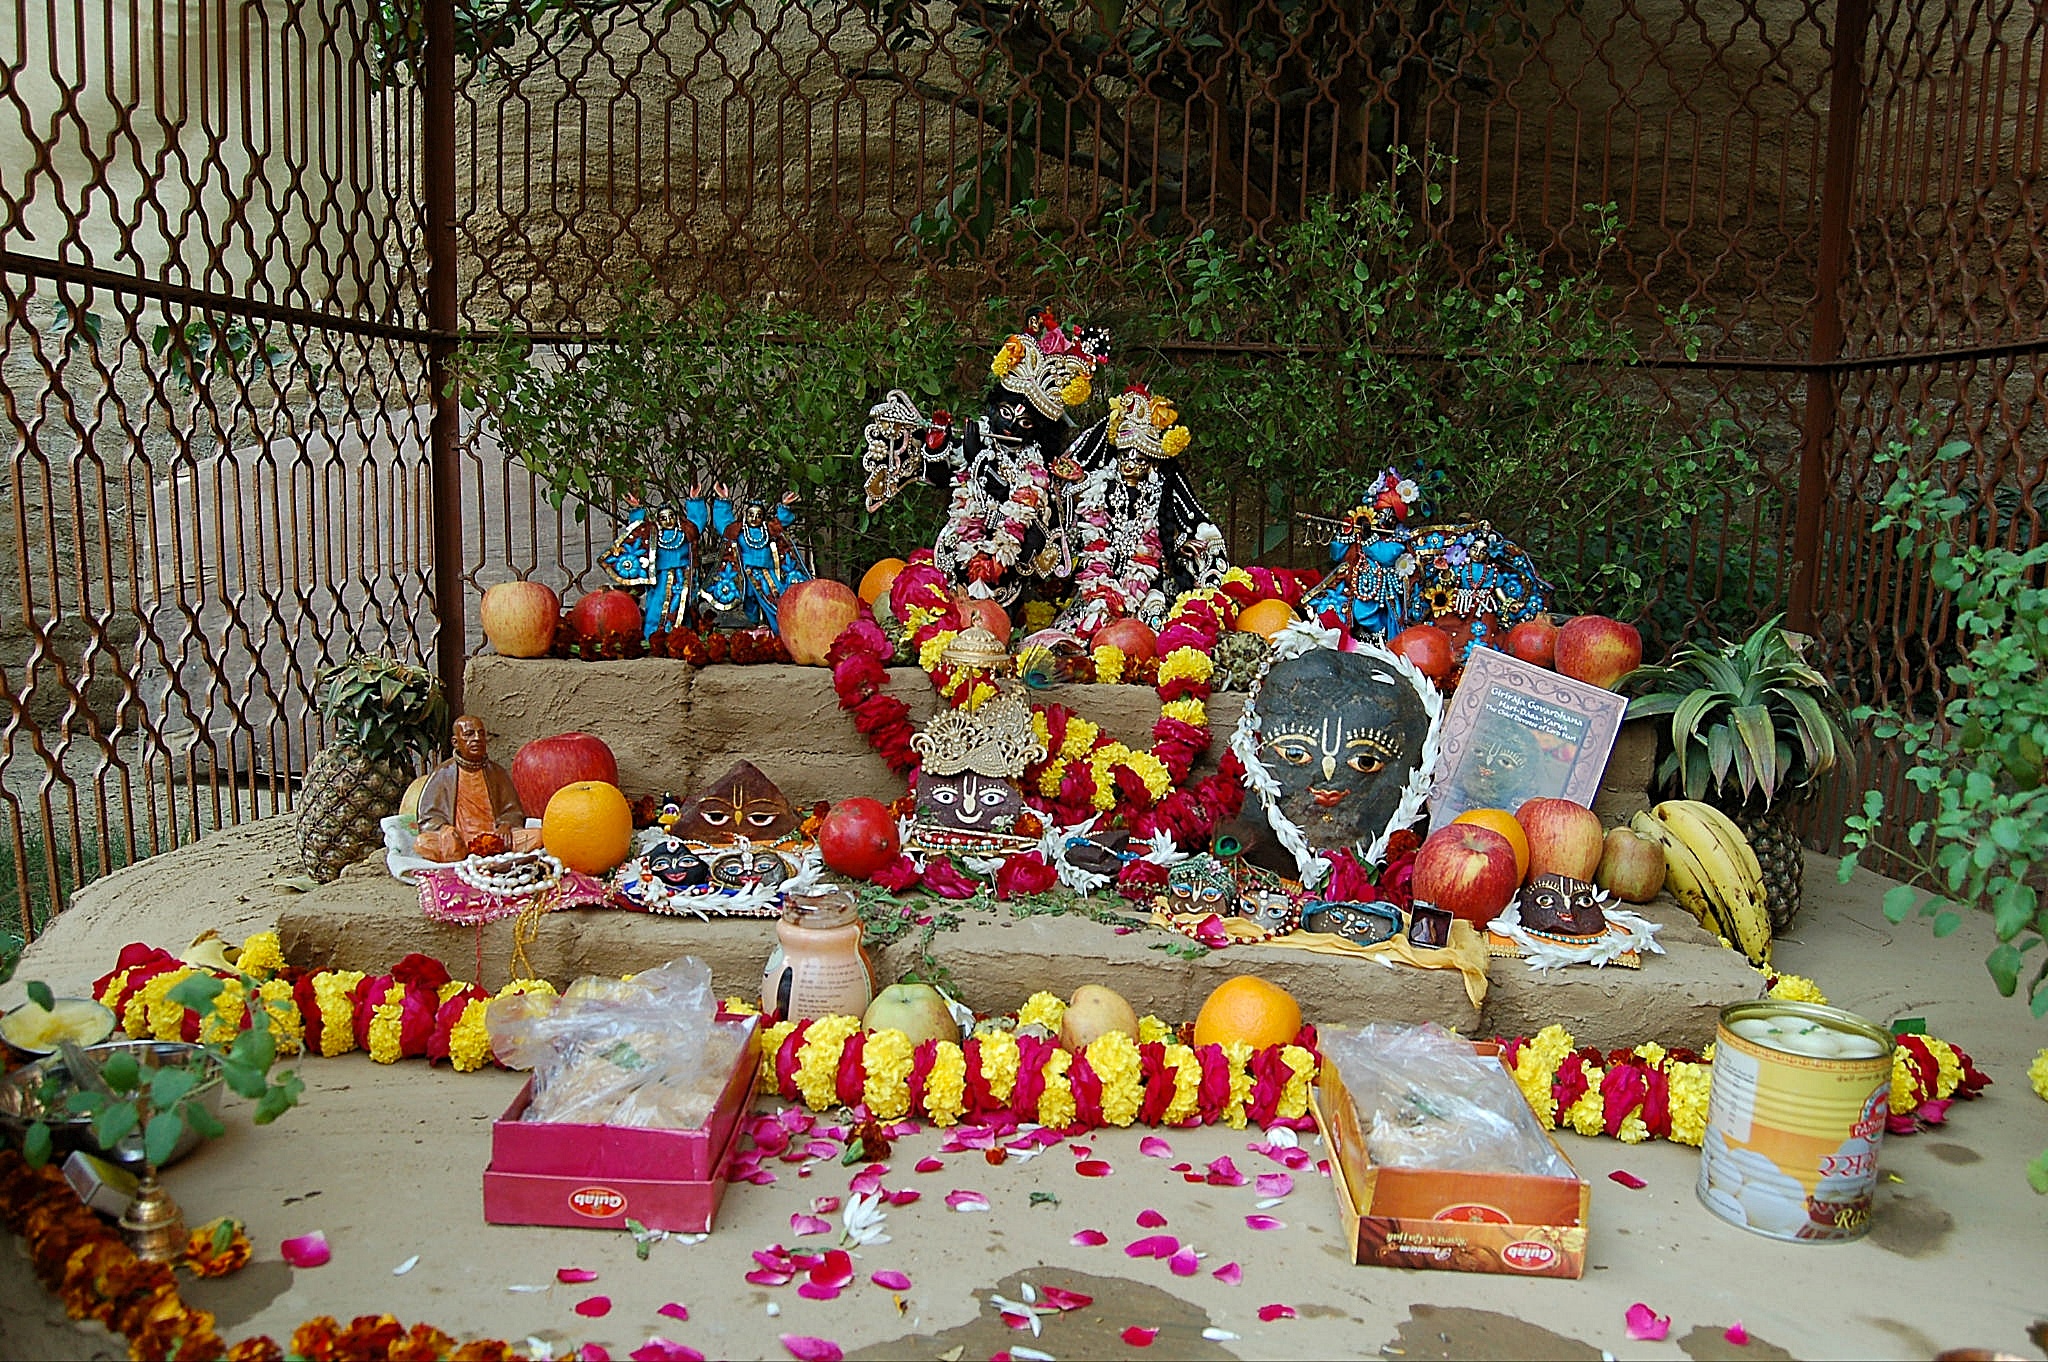 Radha Madhava at a courtyard festival